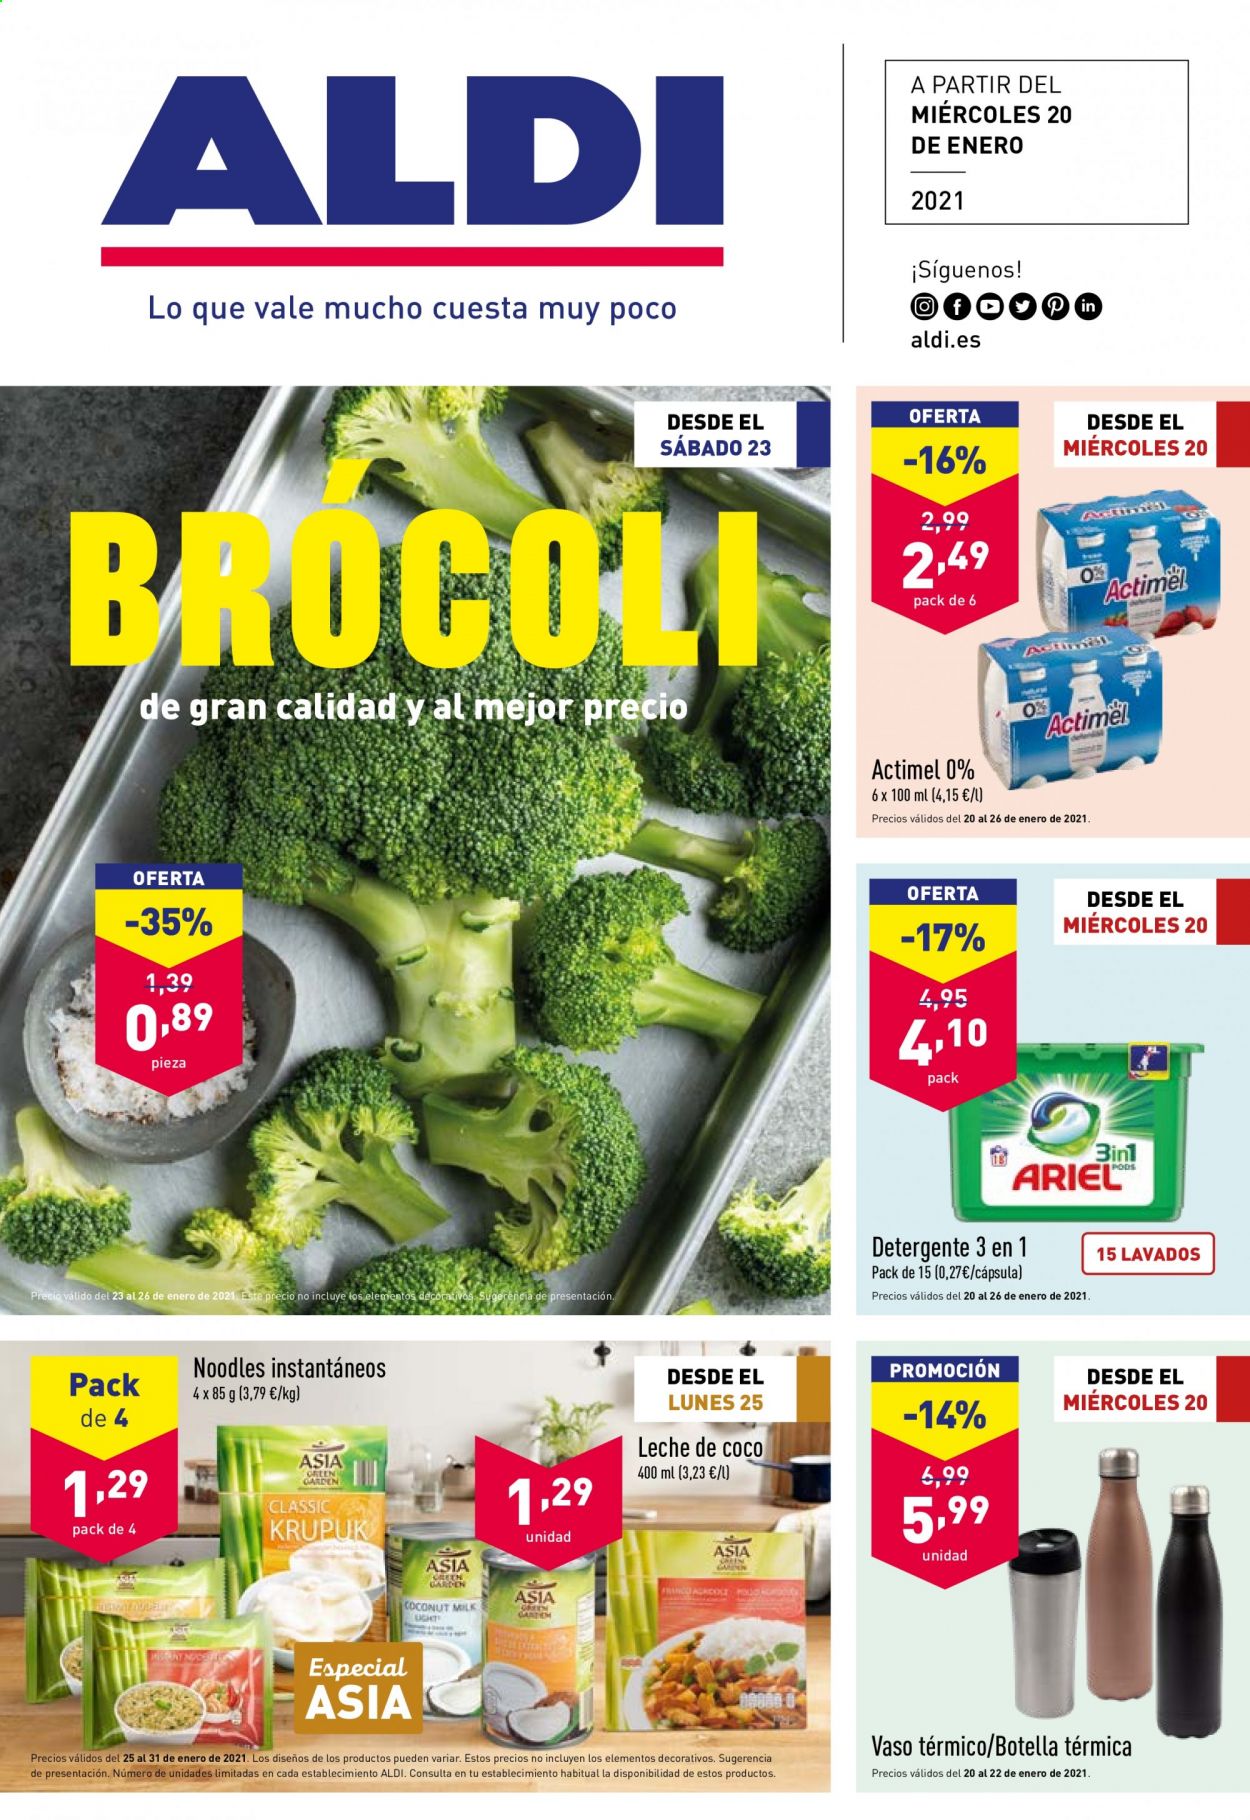 thumbnail - Folleto actual Aldi - 20/01/21 - 26/01/21 - Ventas - brócoli, leche, Actimel, detergente, vaso, vaso térmico. Página 1.